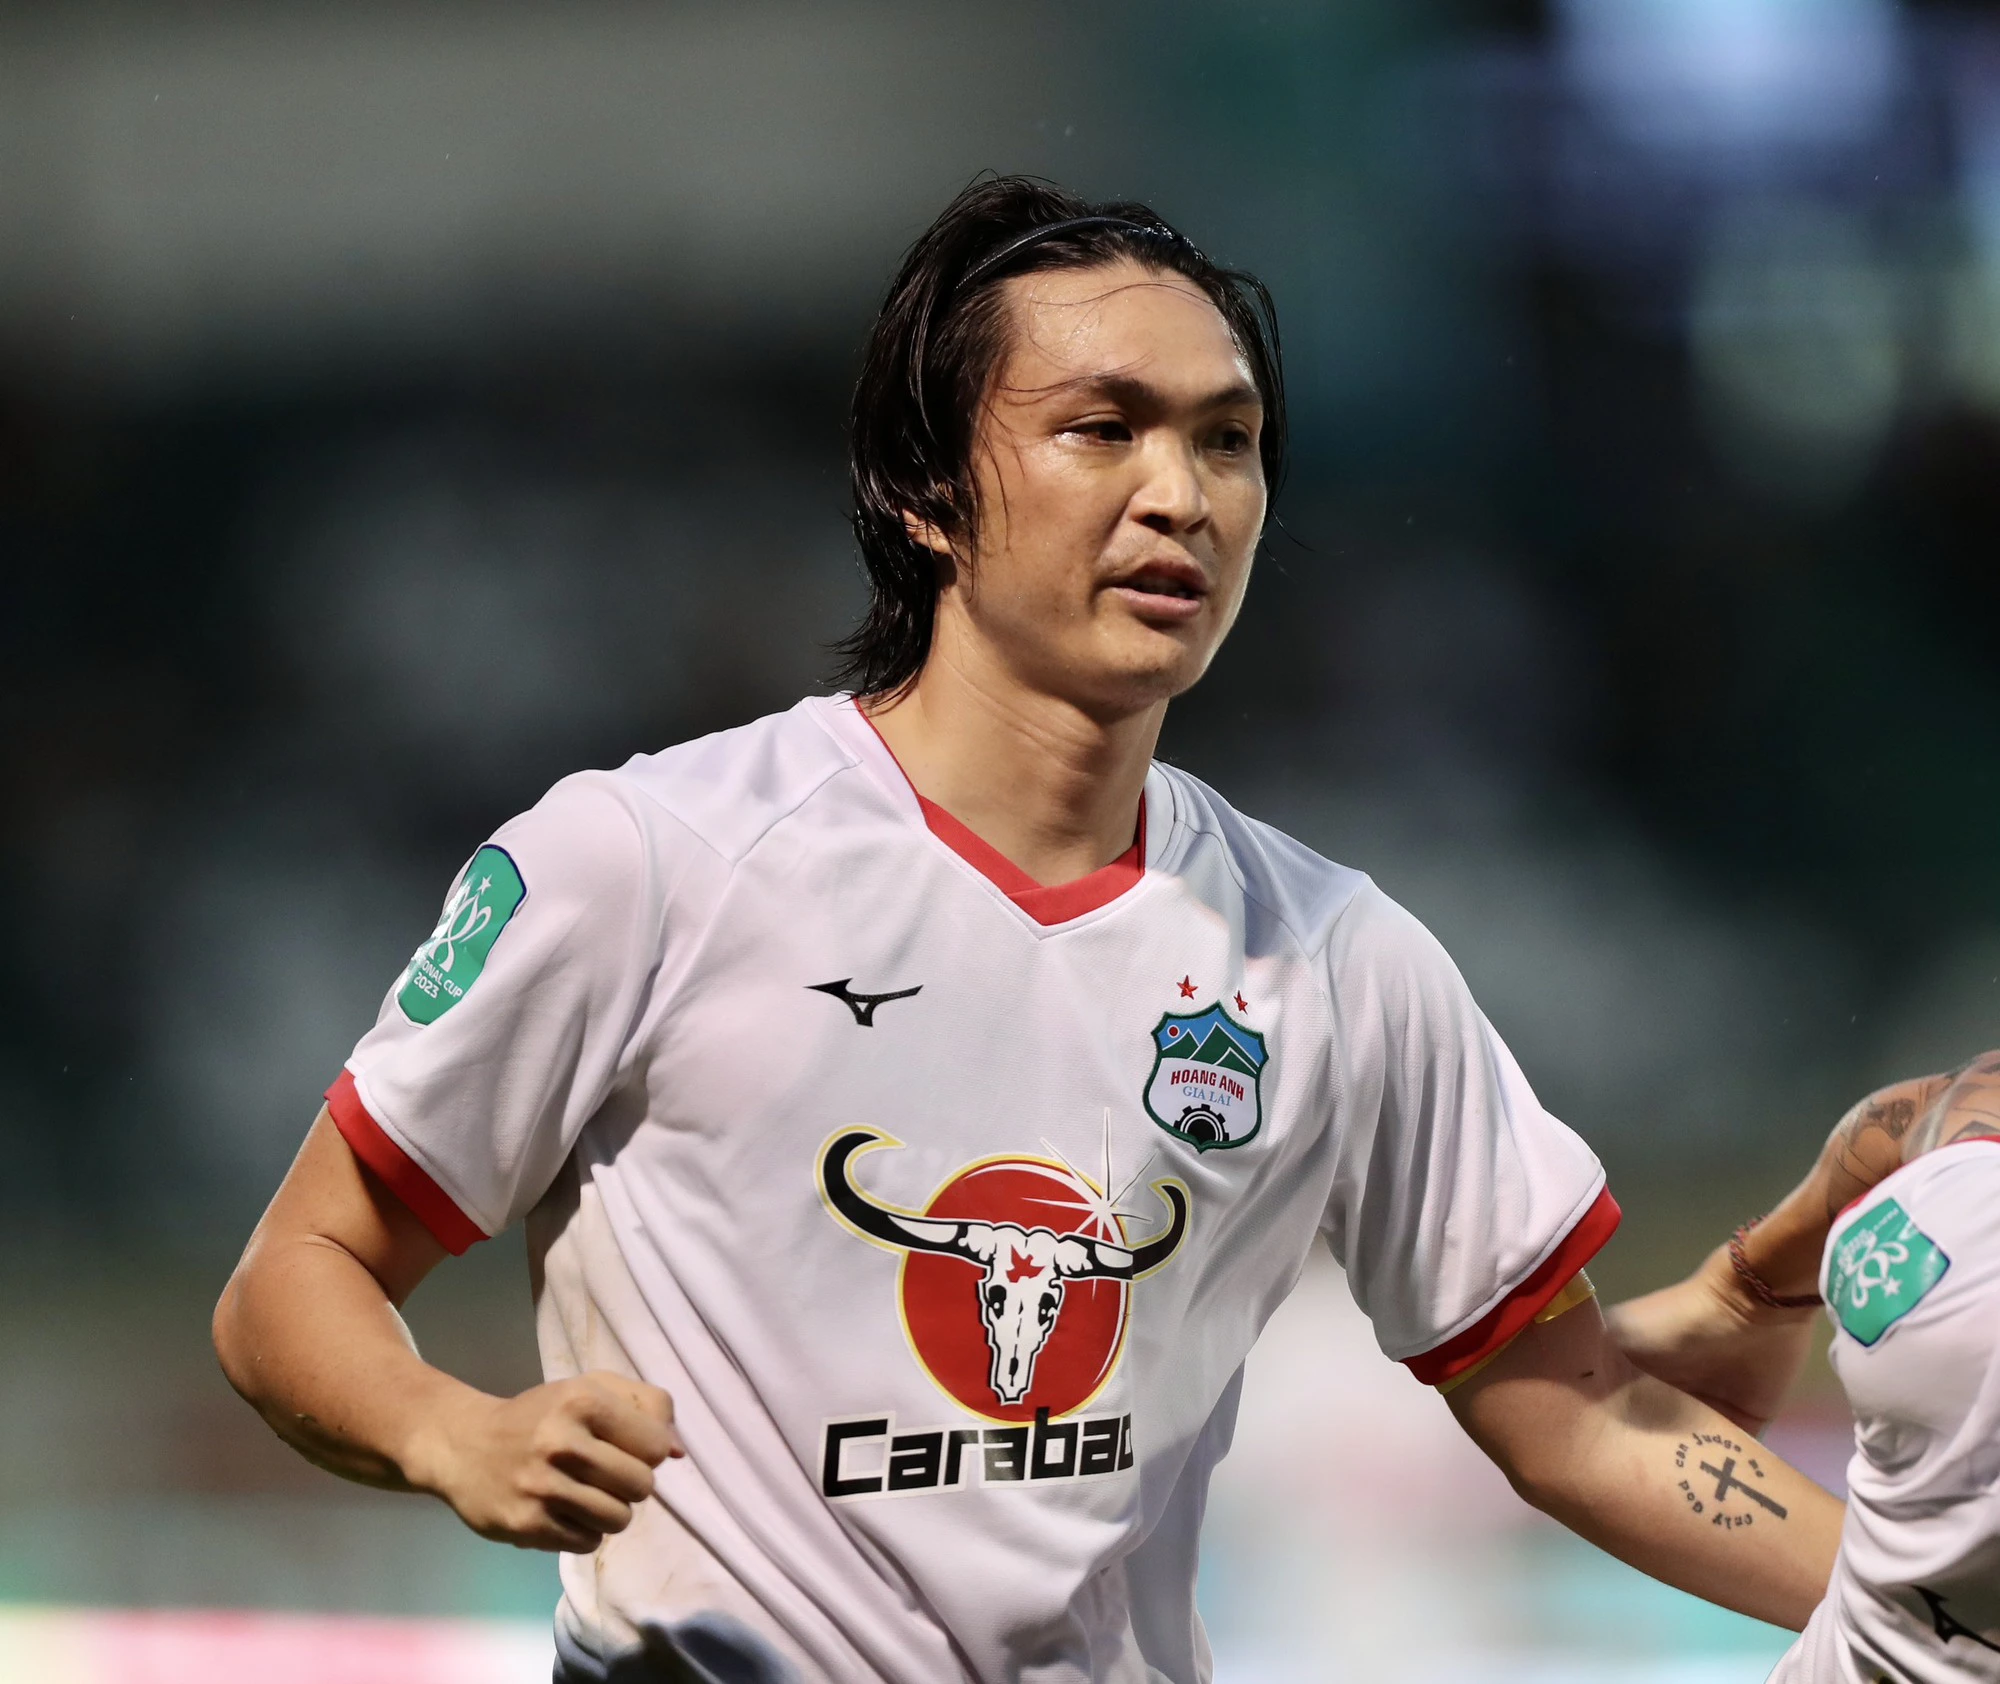 Cầu thủ Nguyễn Tuấn Anh – Thiên tài số 10 với con đường chông gai